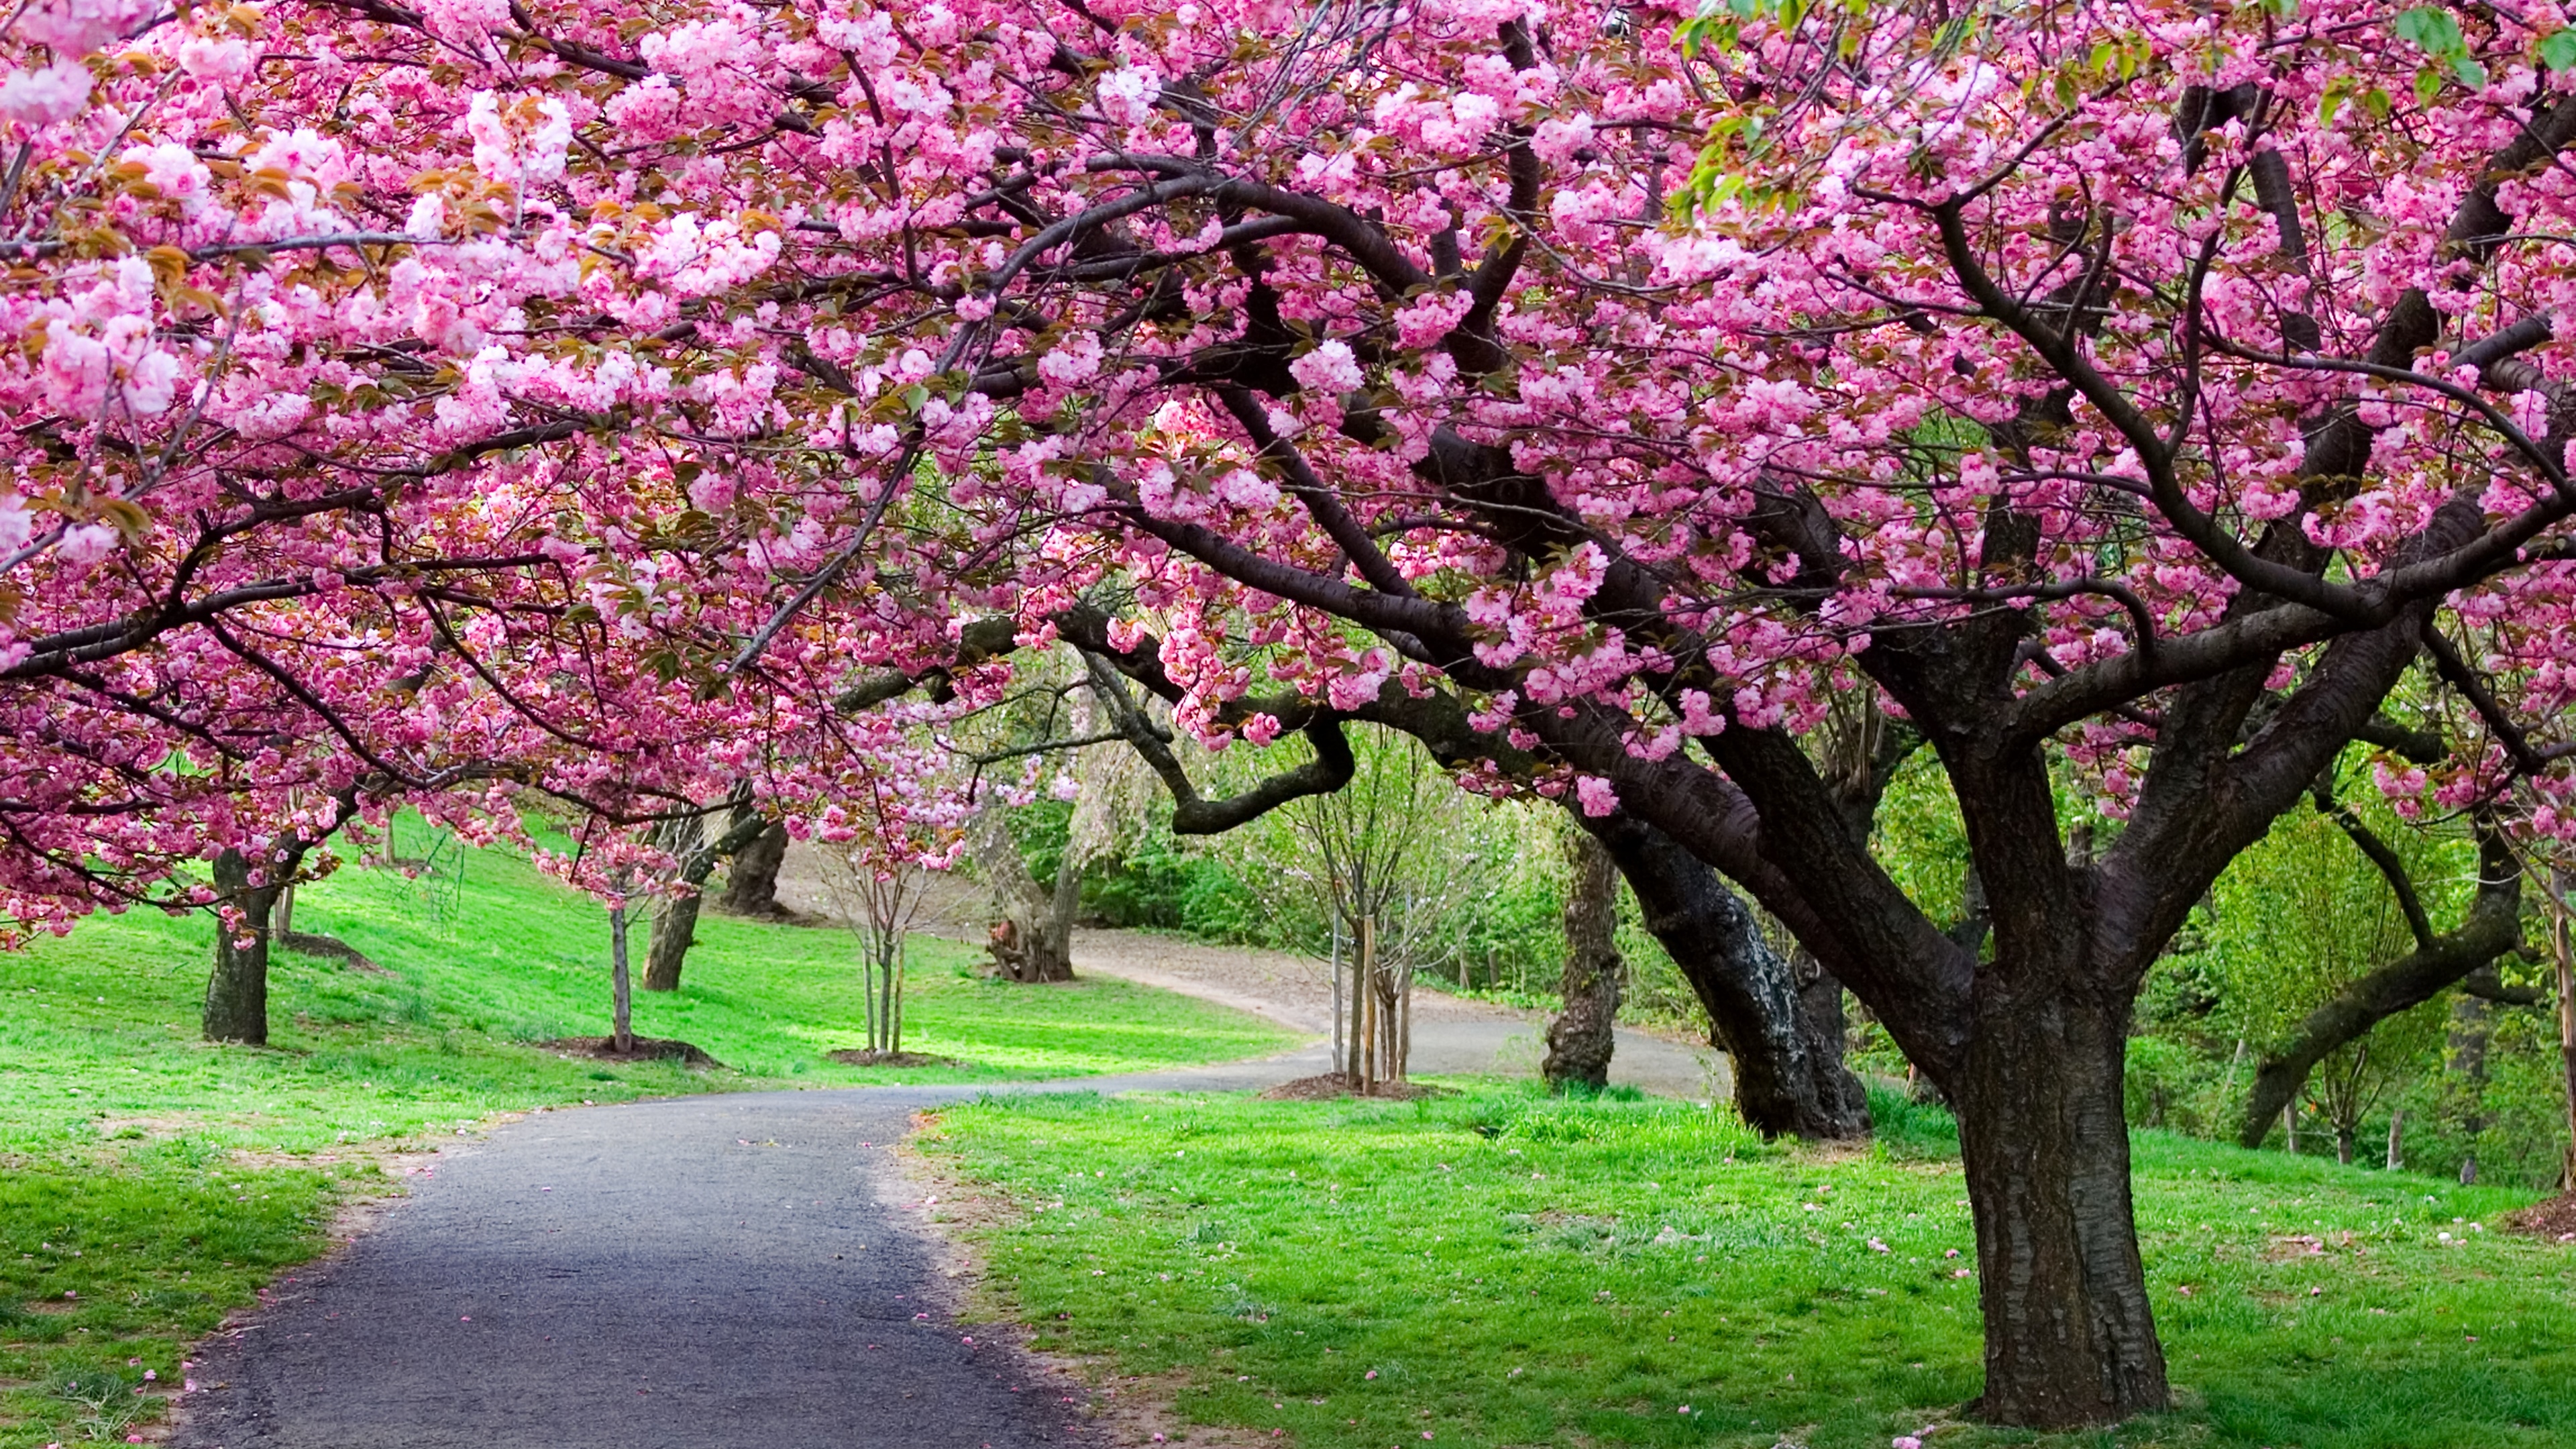 670994 免費下載壁紙 春季, 自然, 樱花, 樱桃树, 日本, 公园, 幽径 屏保和圖片